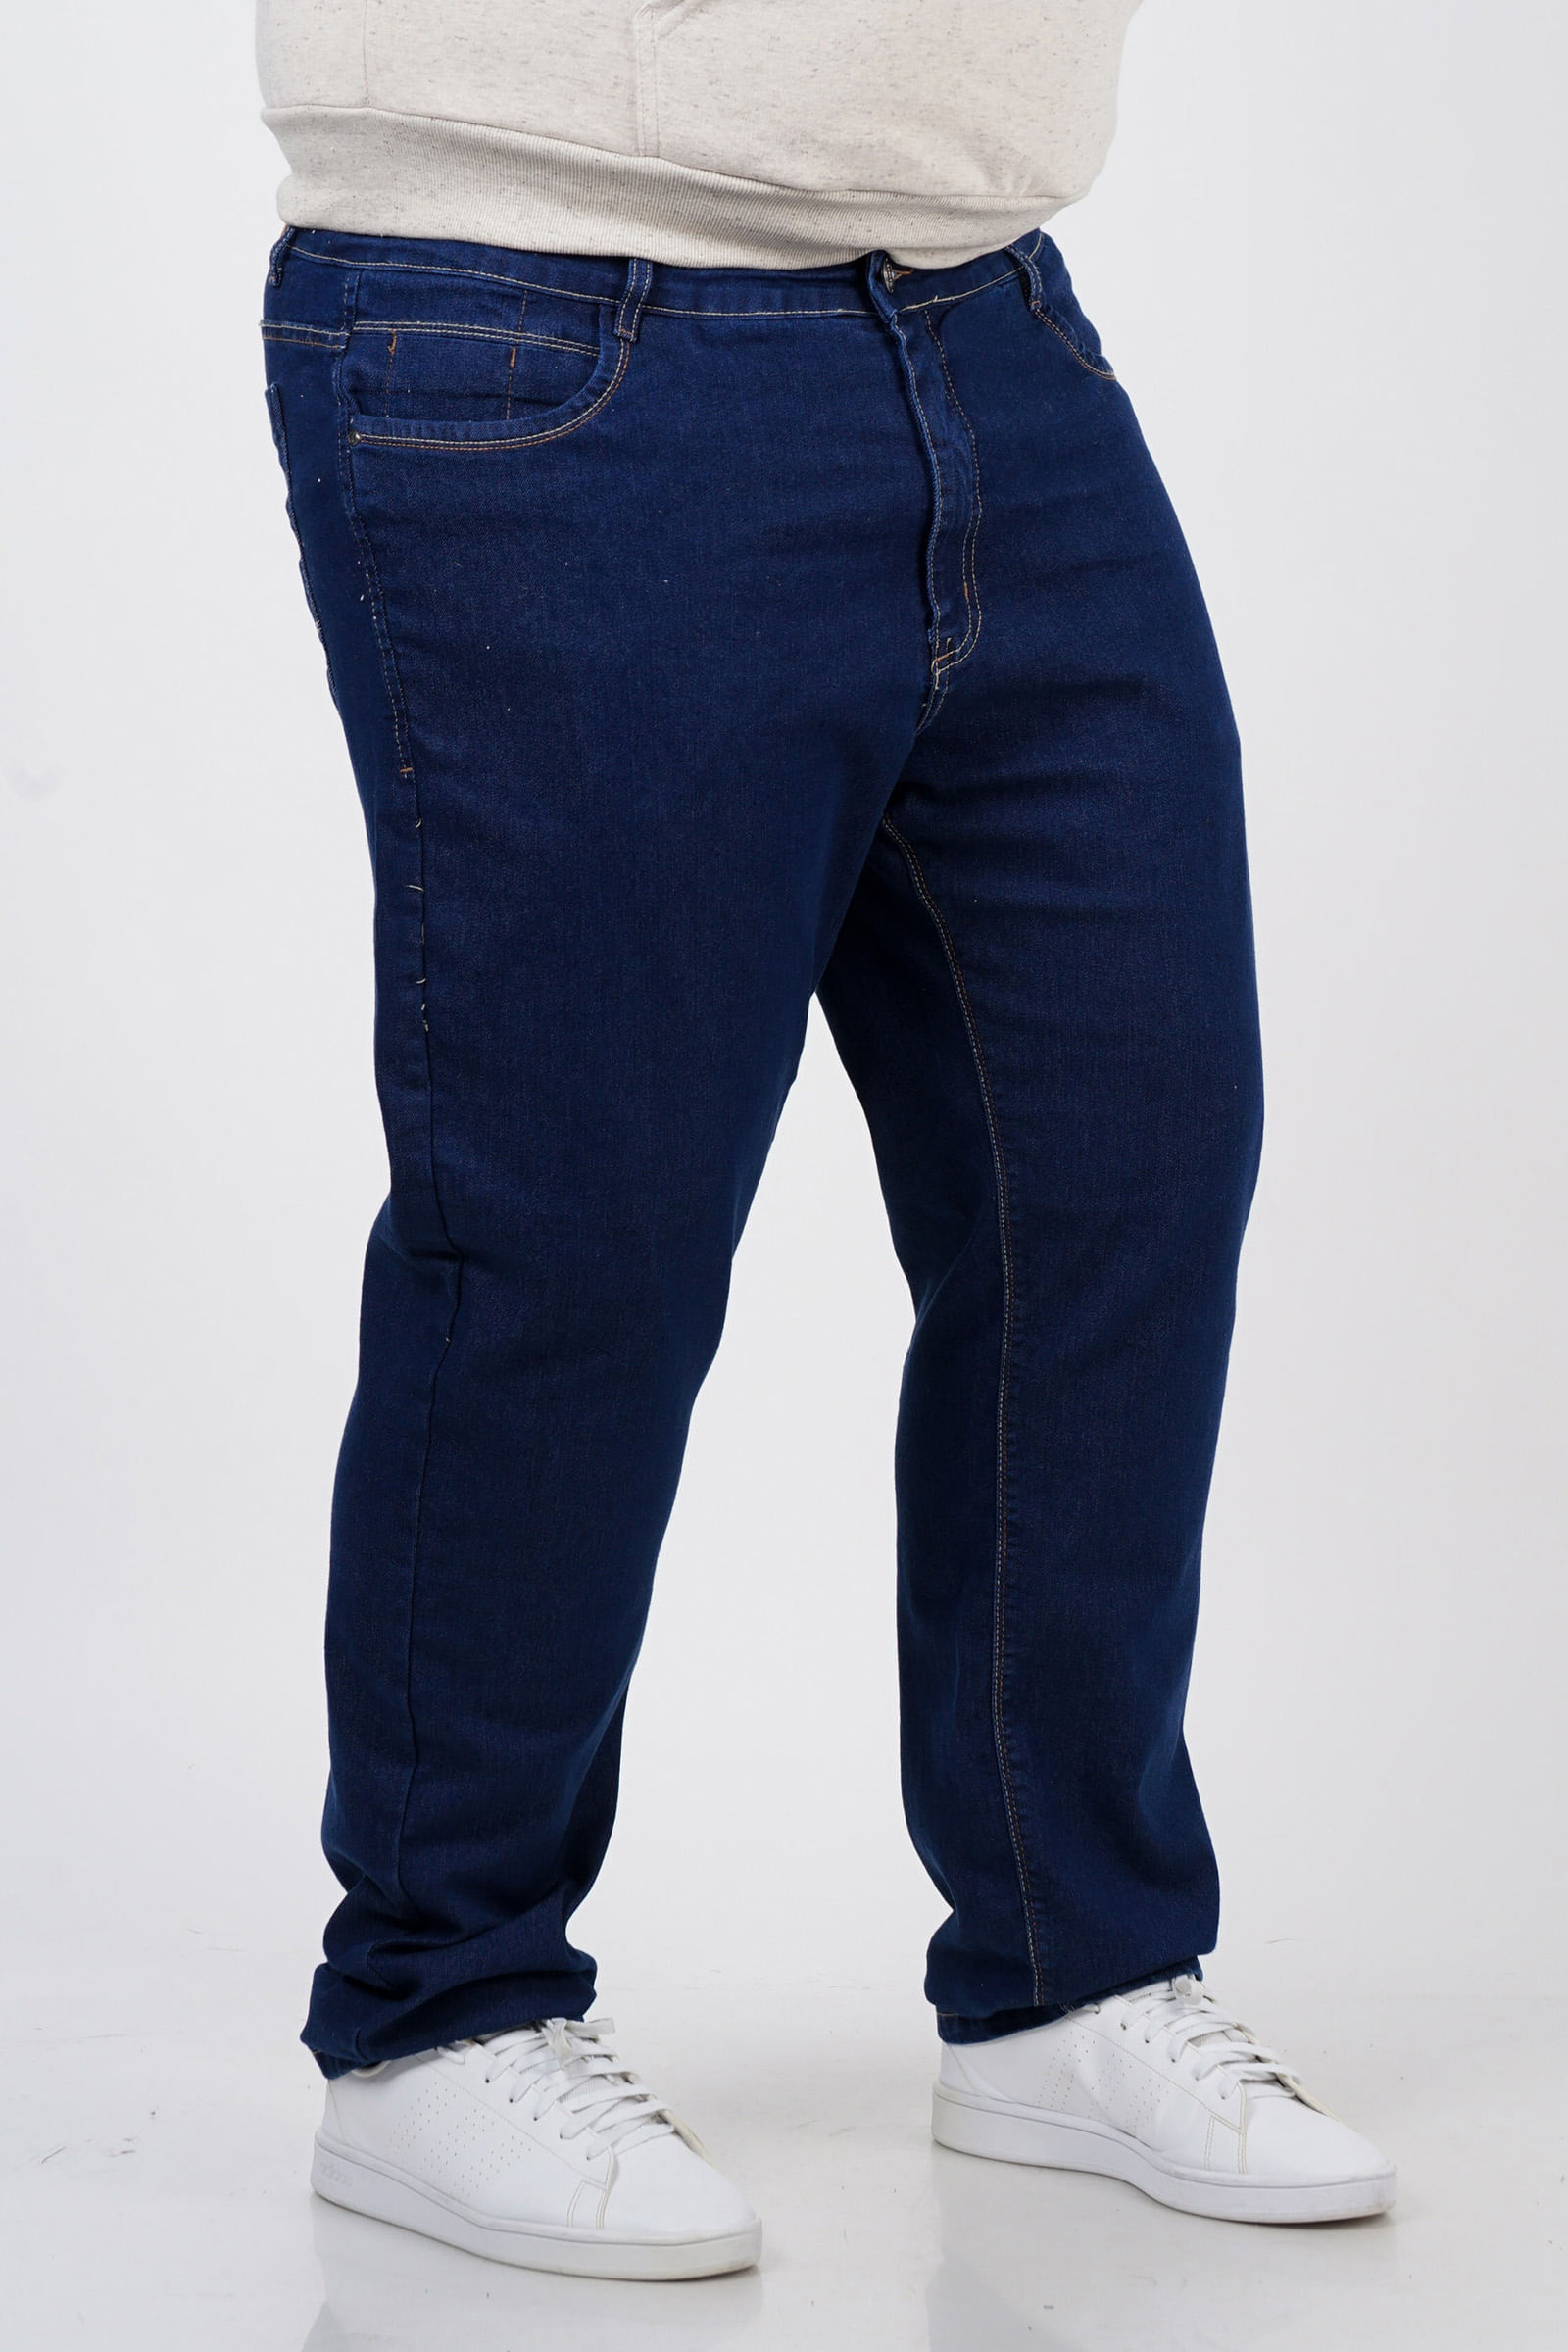 Calca-jeans-reta-plus-size_0102_4